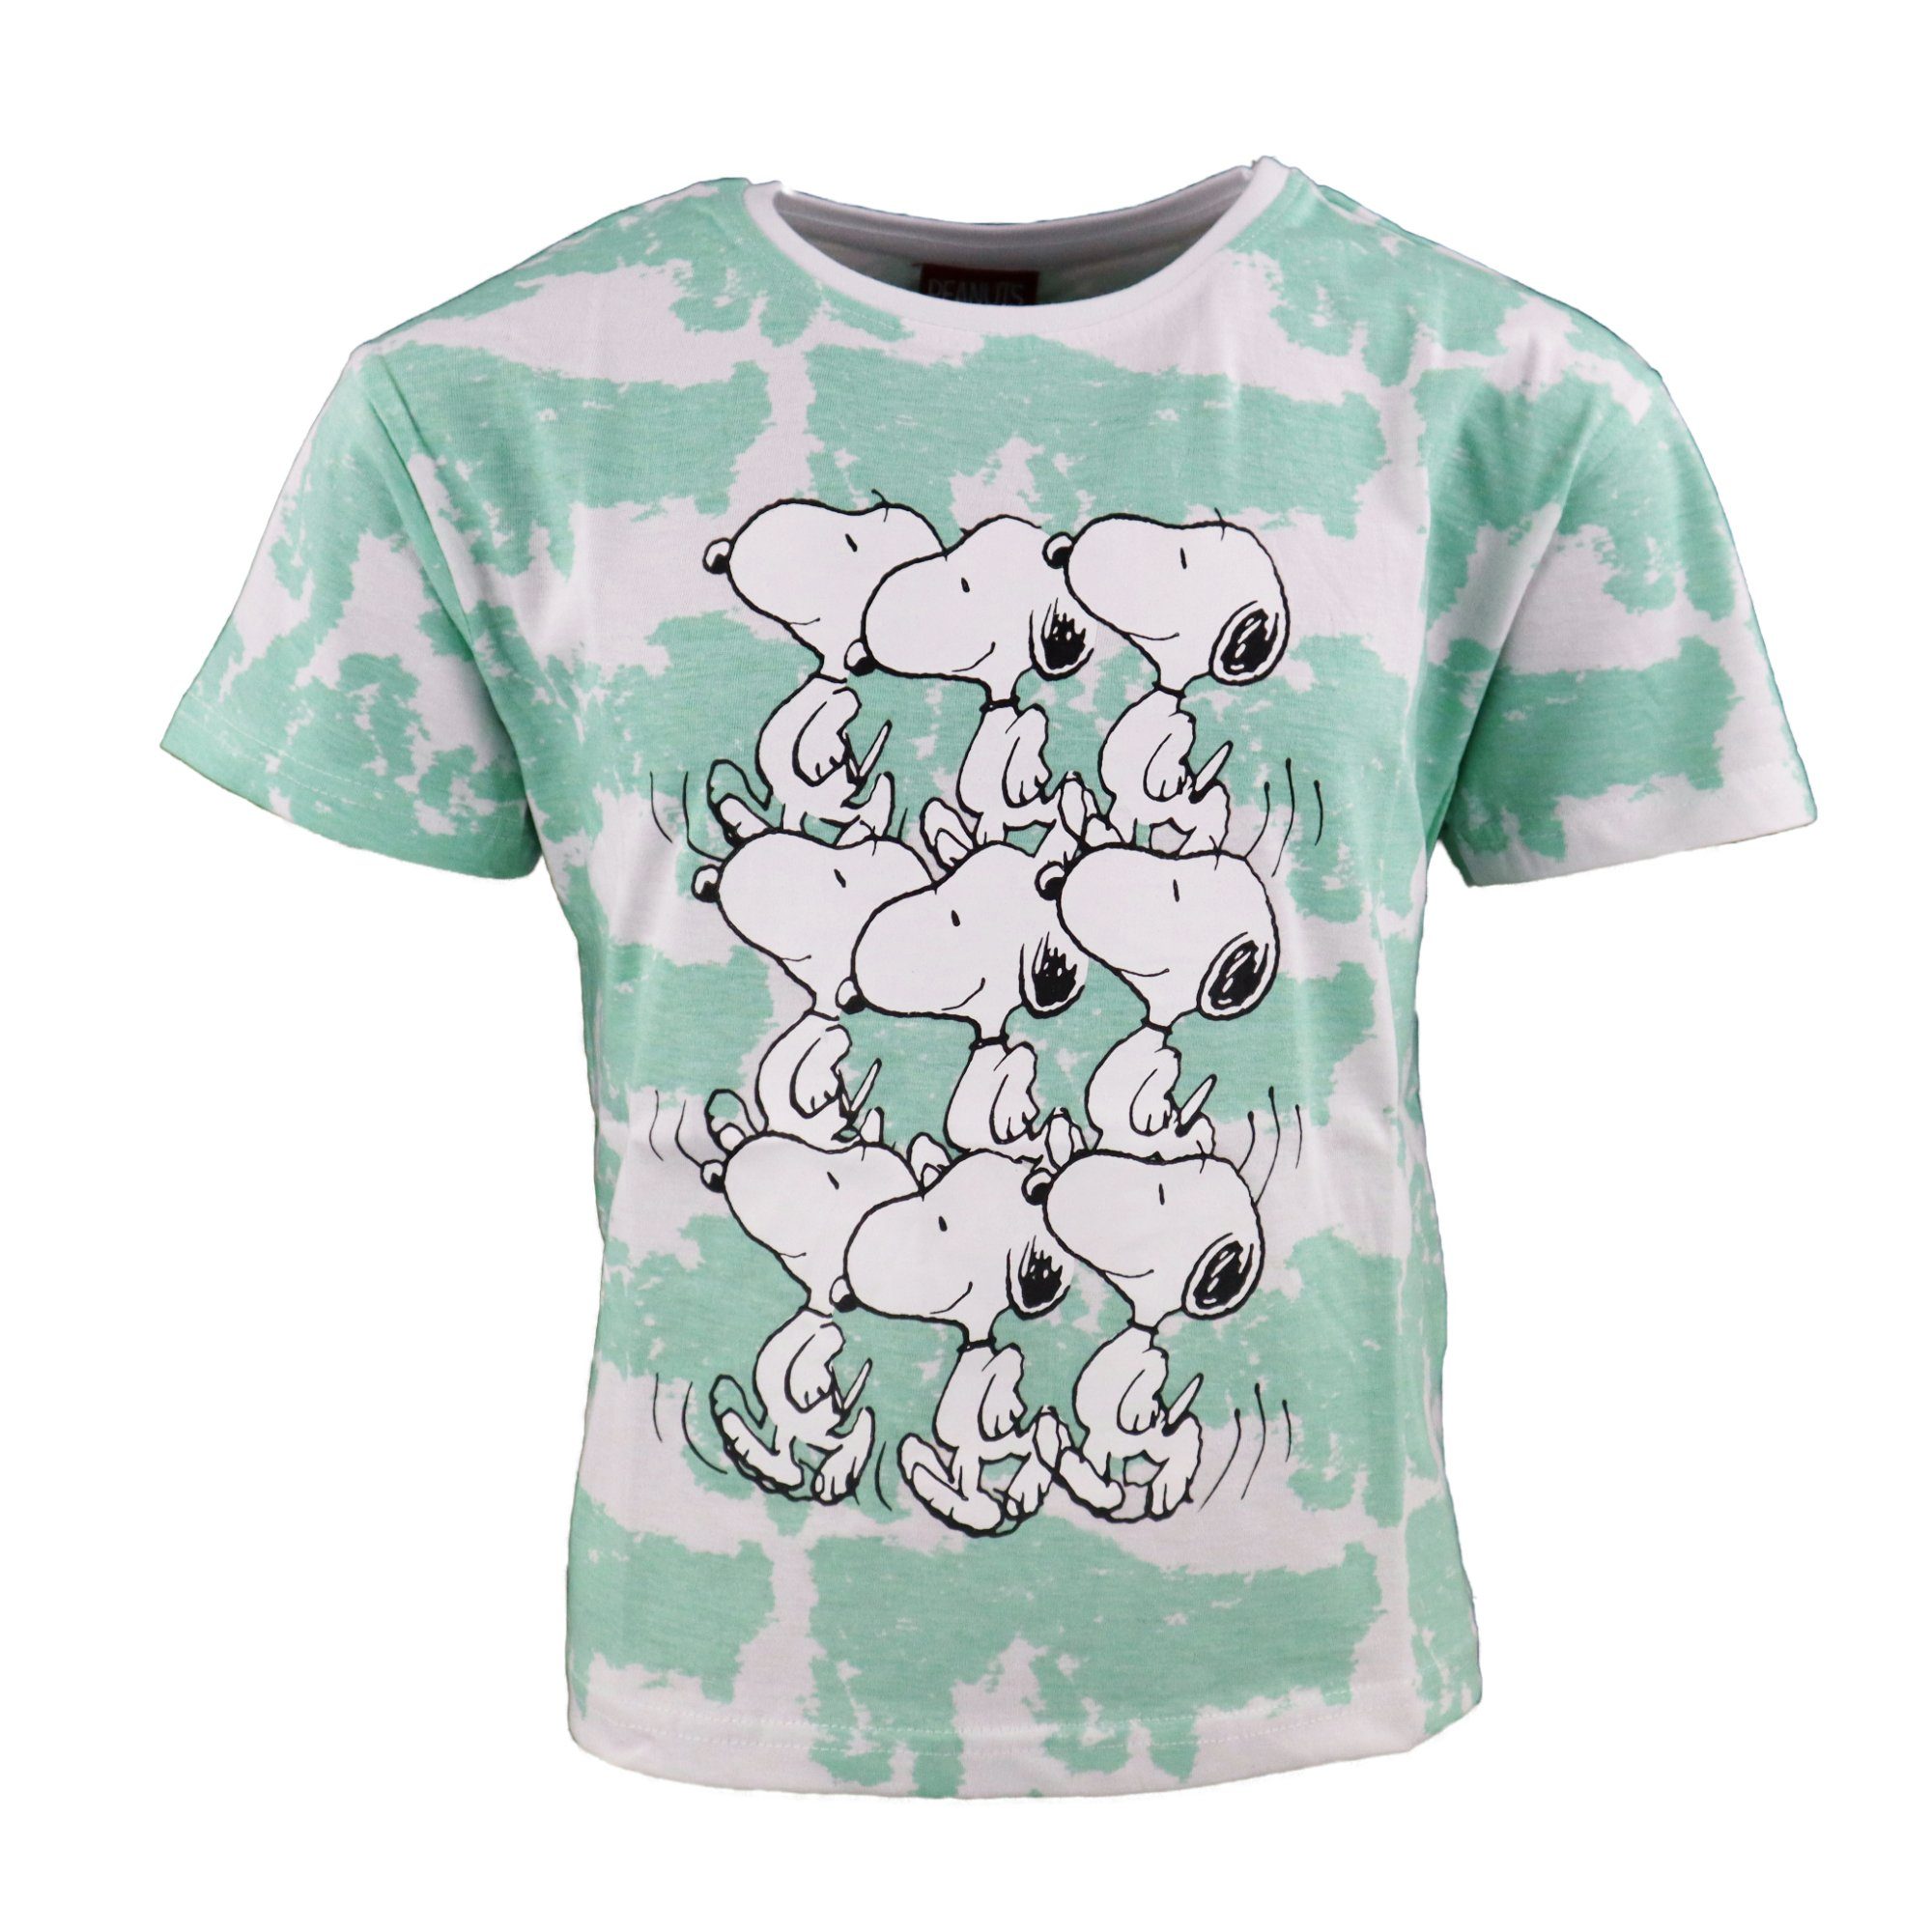 Snoopy Print-Shirt Gr. bis Kinder 100% baumwolle T-Shirt Shirt Mädchen 134 164, Grün Jugend Snoopy